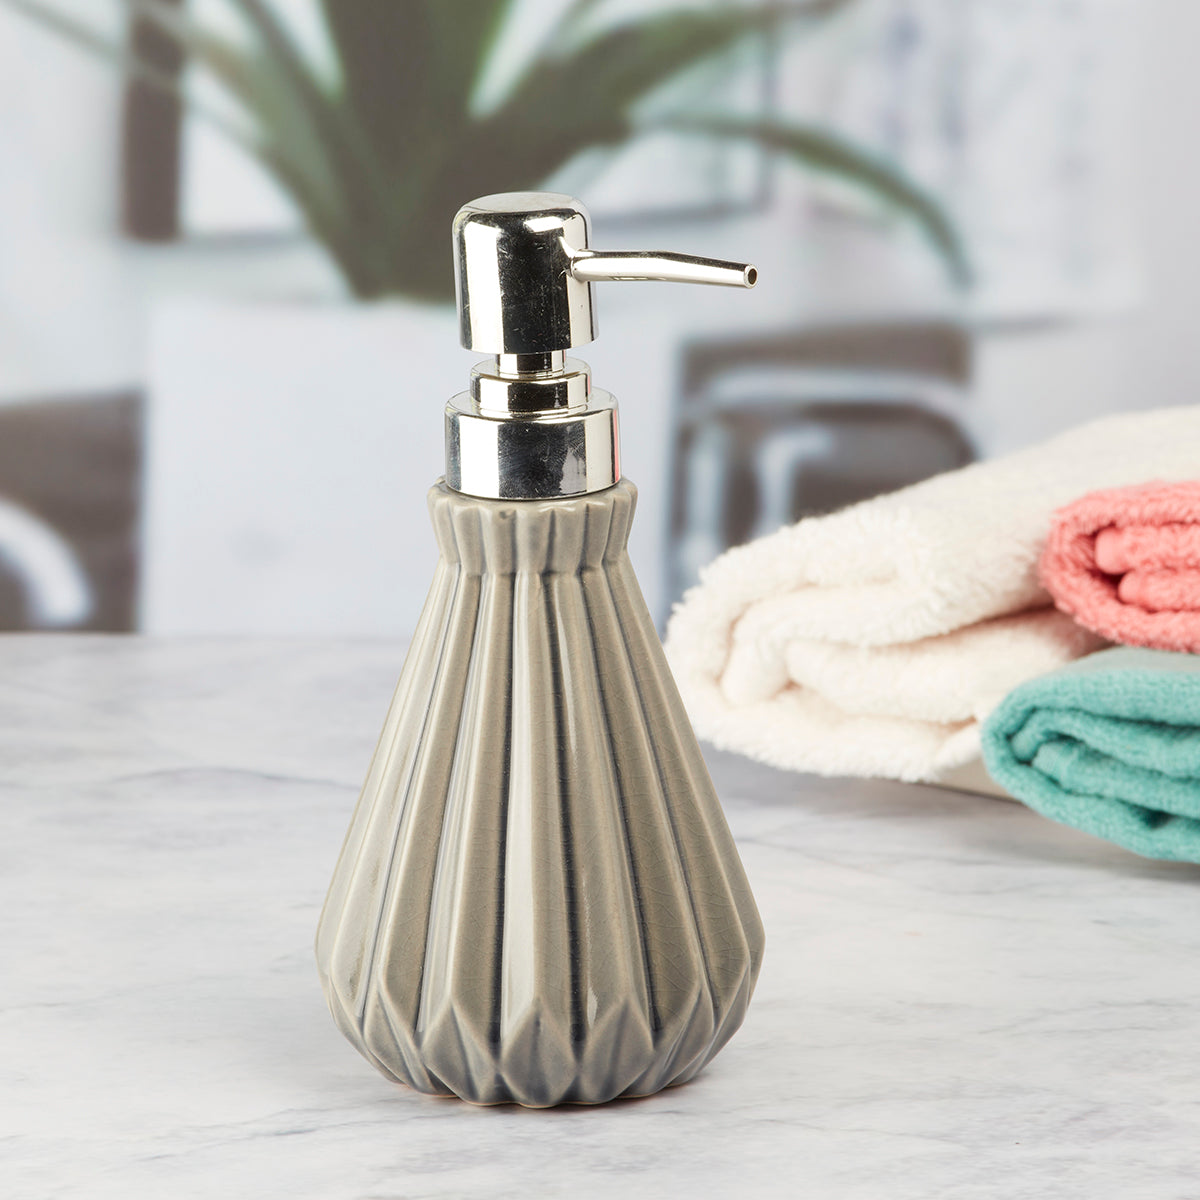 Kookee Ceramic Soap Dispenser for Bathroom handwash, refillable pump bottle for Kitchen hand wash basin, Set of 1, Grey (7619)